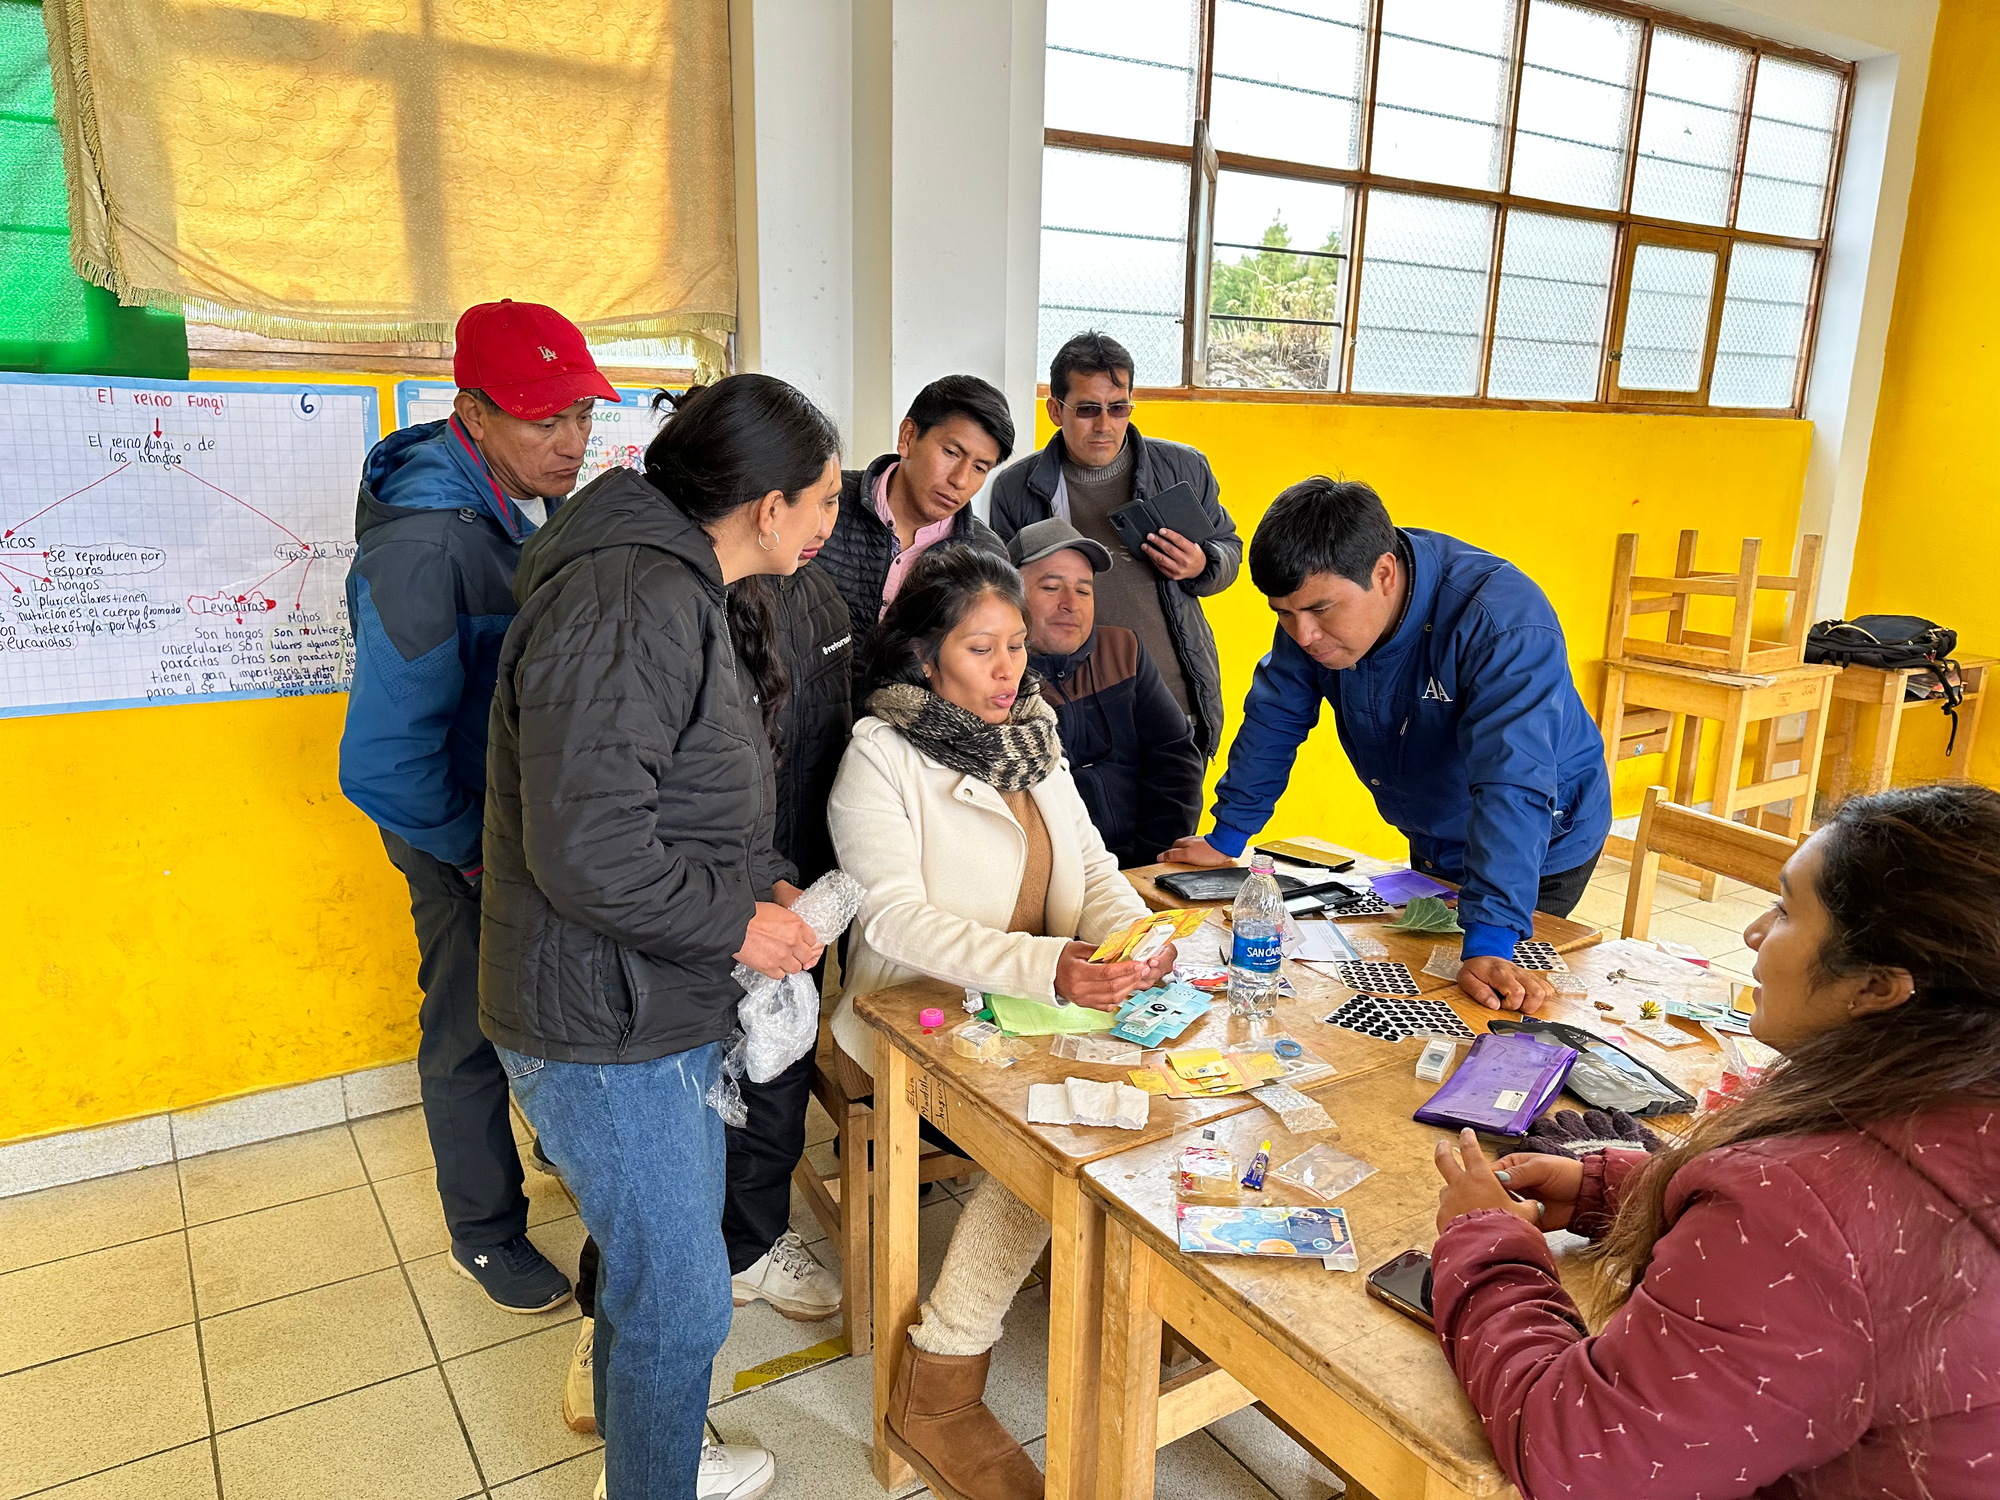 In-person workshops in Cajamarca, Peru